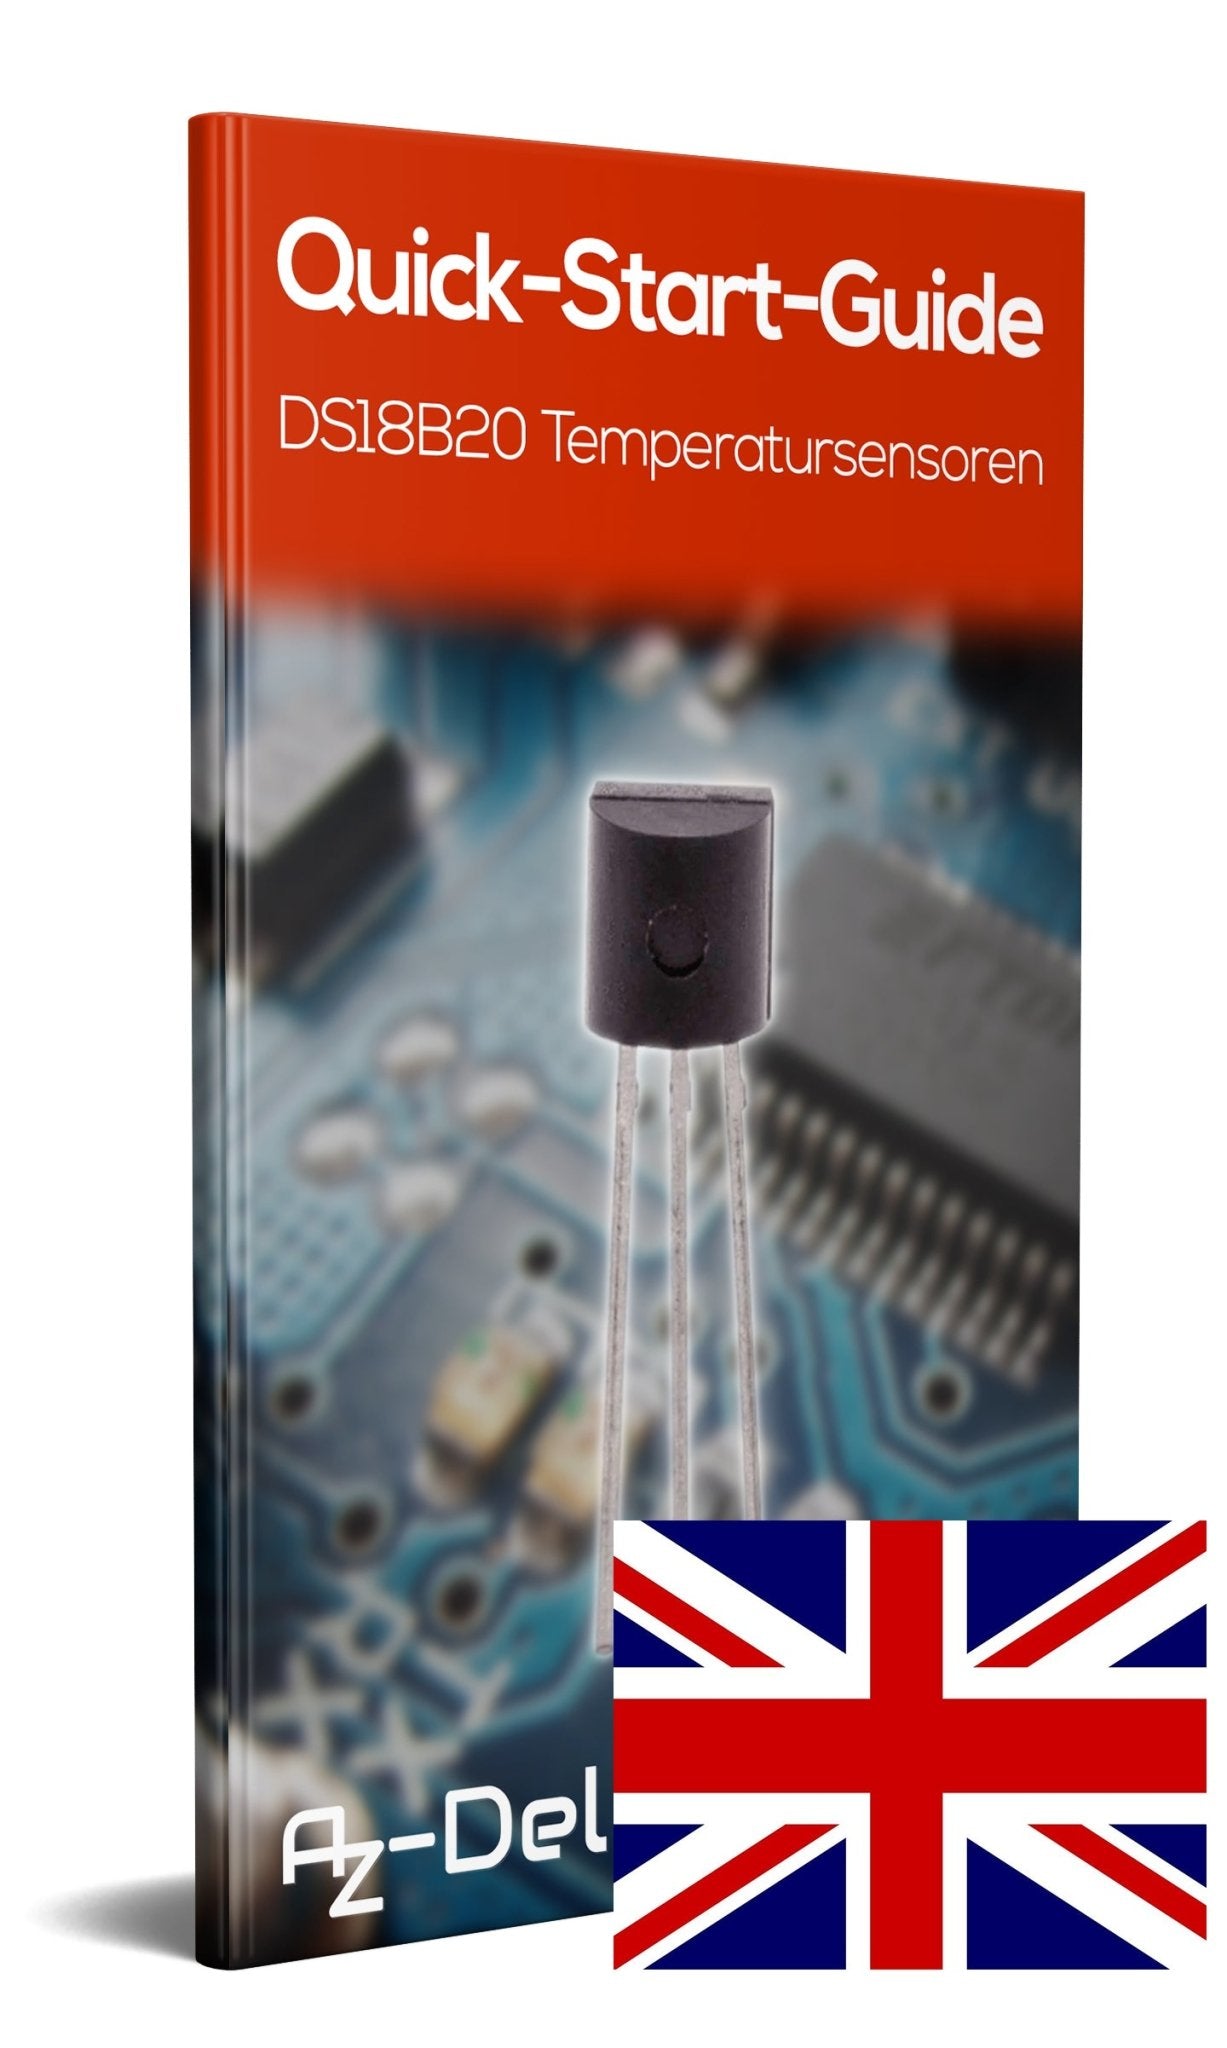 DS18B20 digitaler Temperatursensor TO92-55°C - +125°C - AZ-Delivery